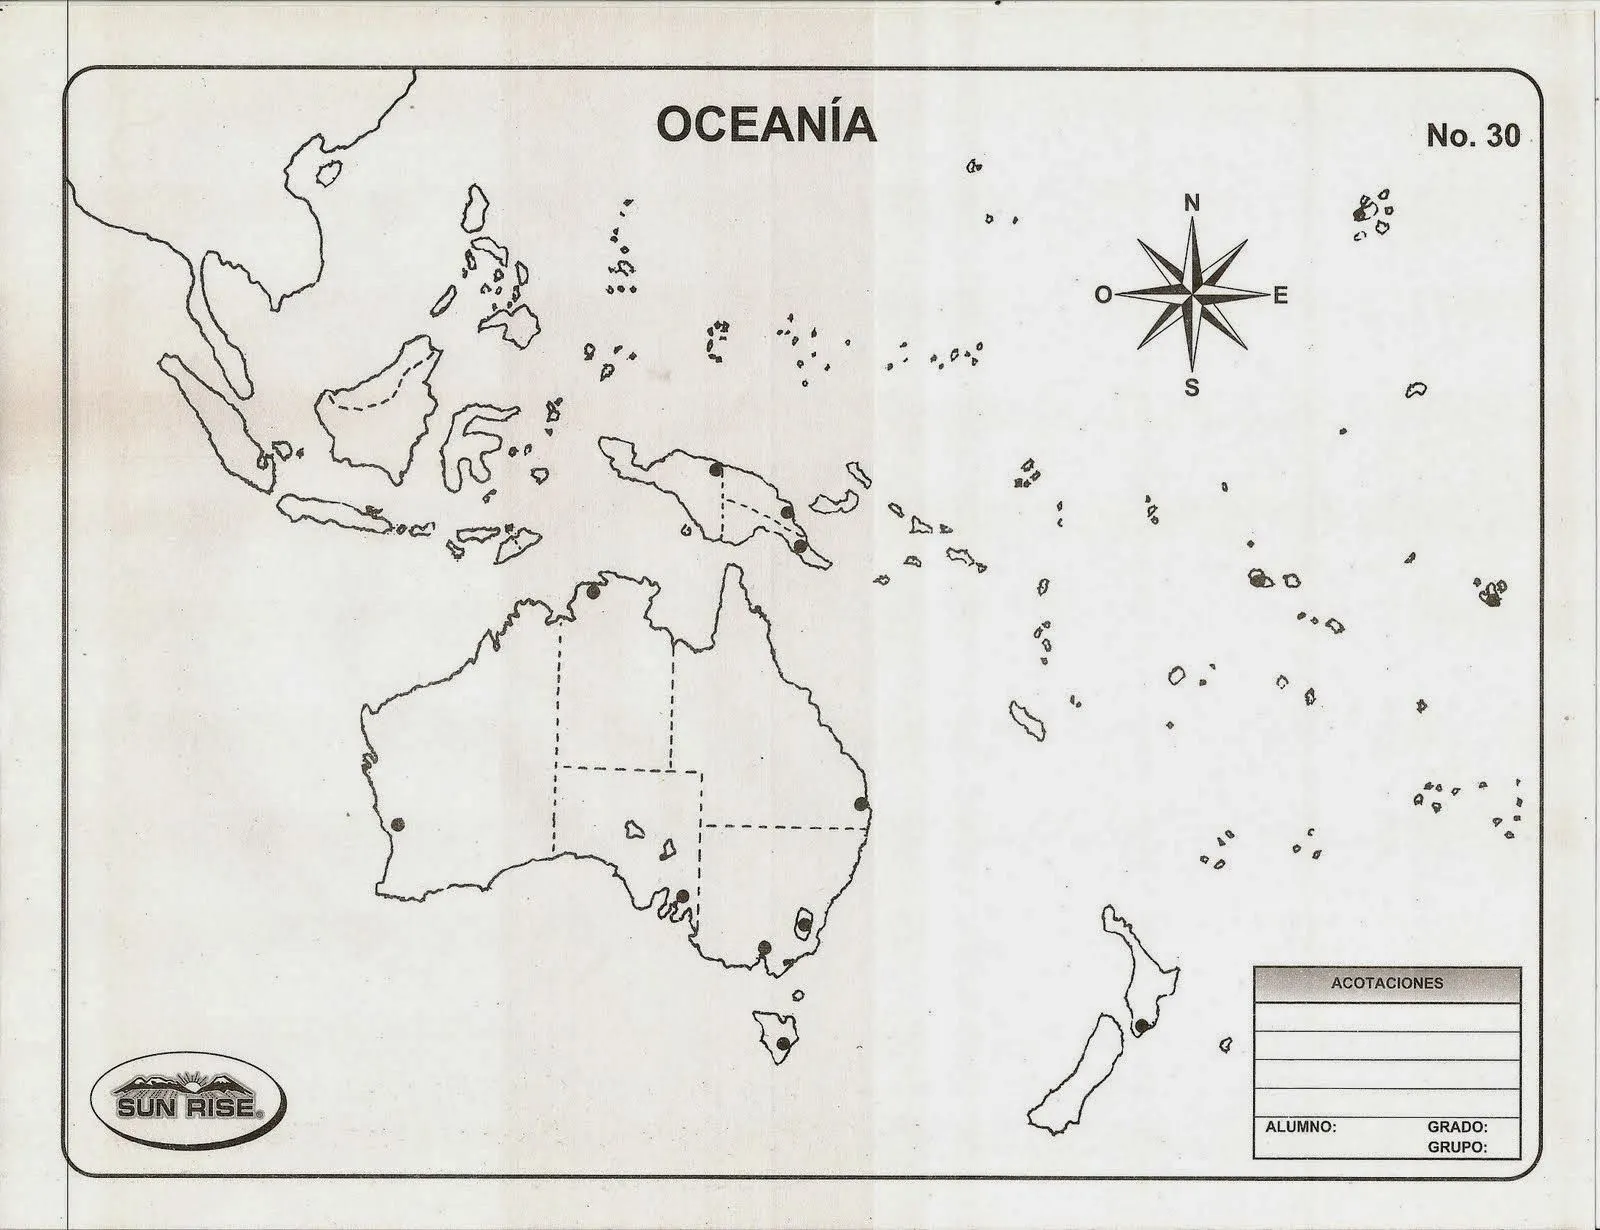 Juegos de Geografía | Juego de Oceanía: Países y ciudades en el mapa |  Cerebriti